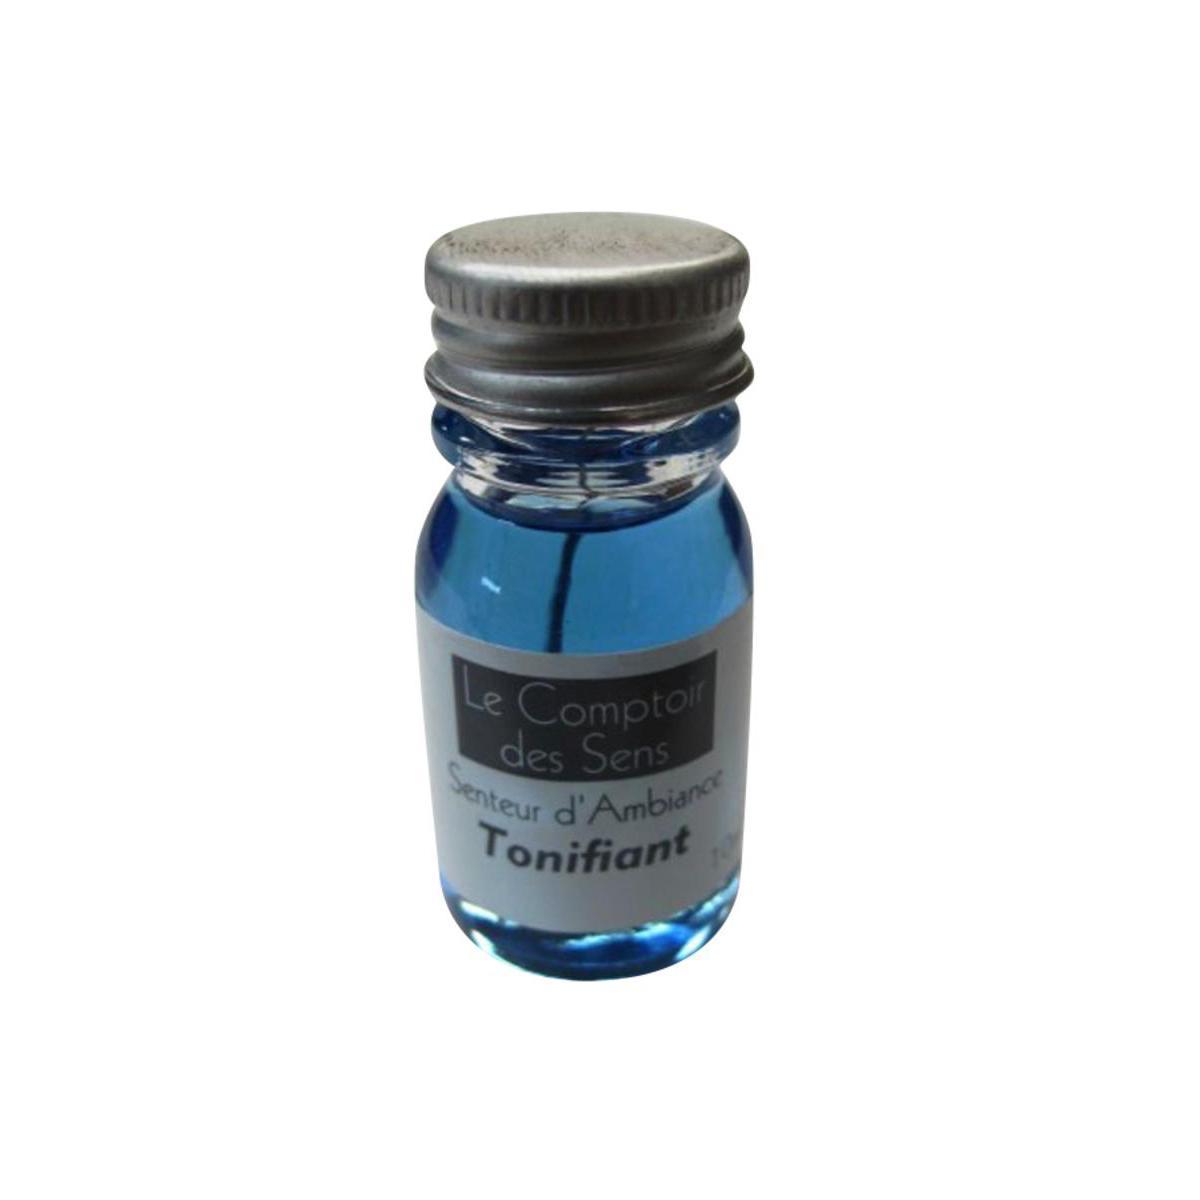 Extrait senteur Tonifiant - Verre - 10 ml - Bleu